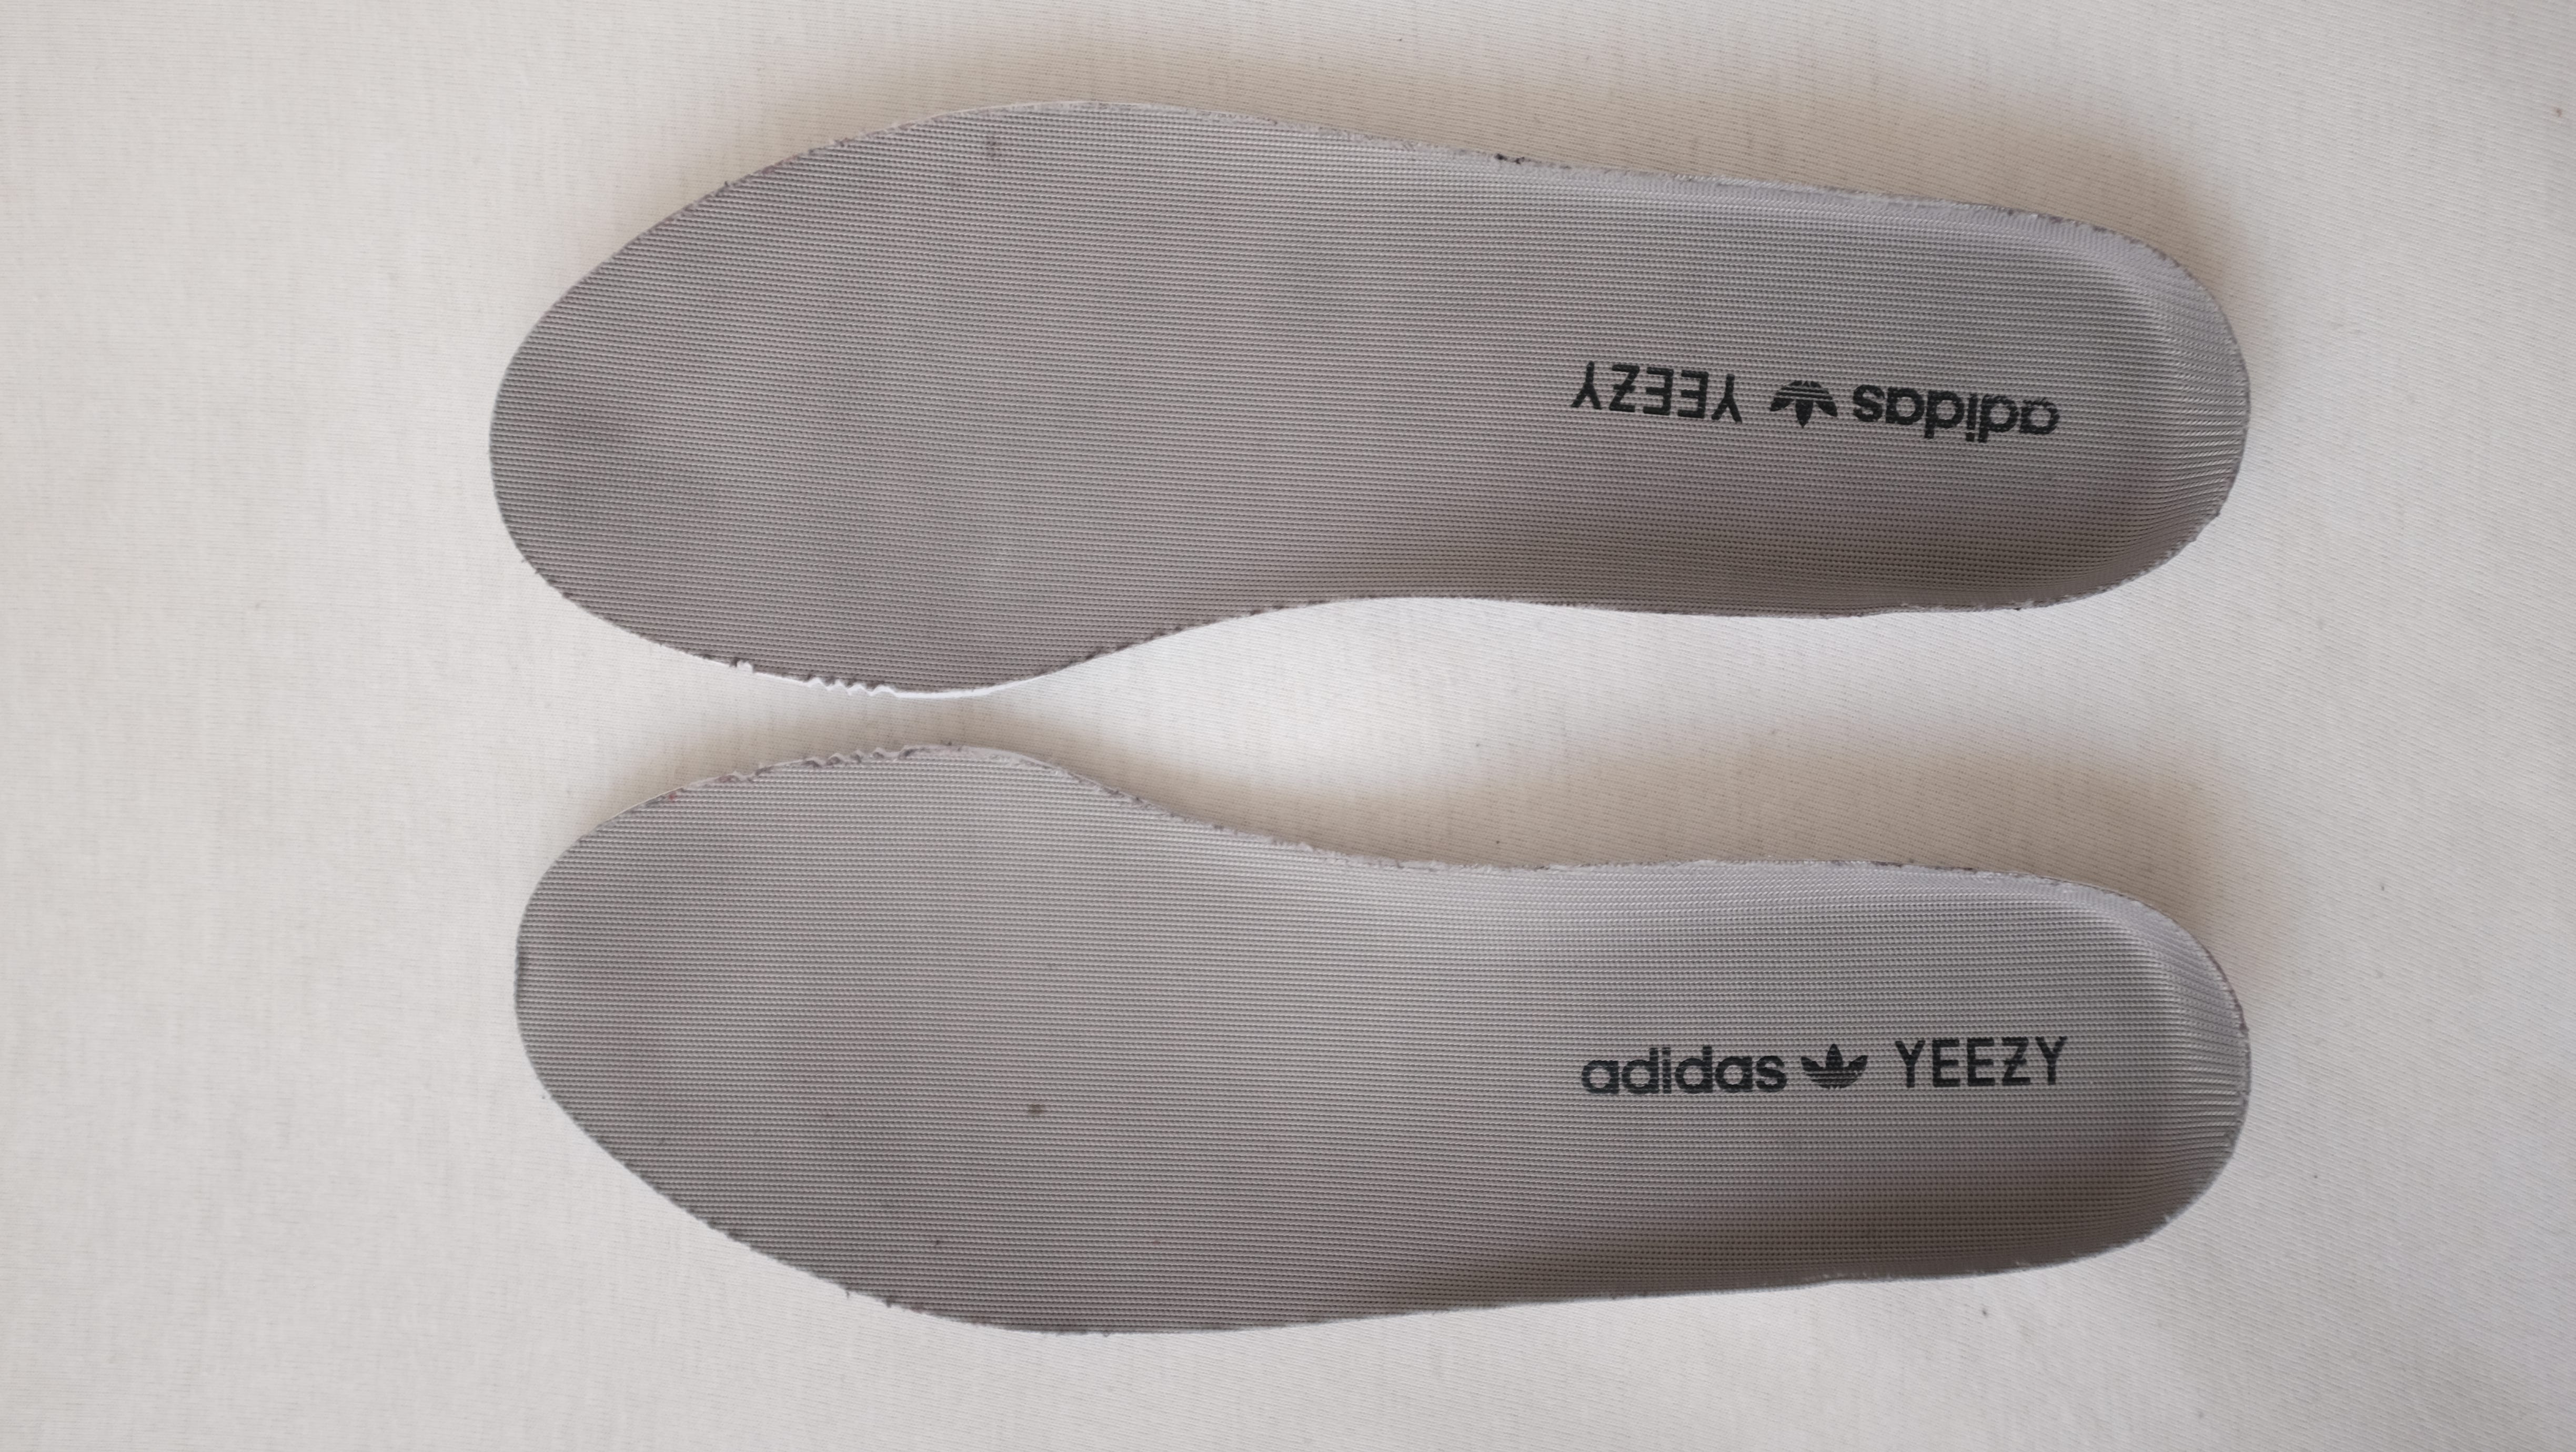 Adidas Yeezy Boost 350 Legit Check Guide by Yeezy Reff | Medium